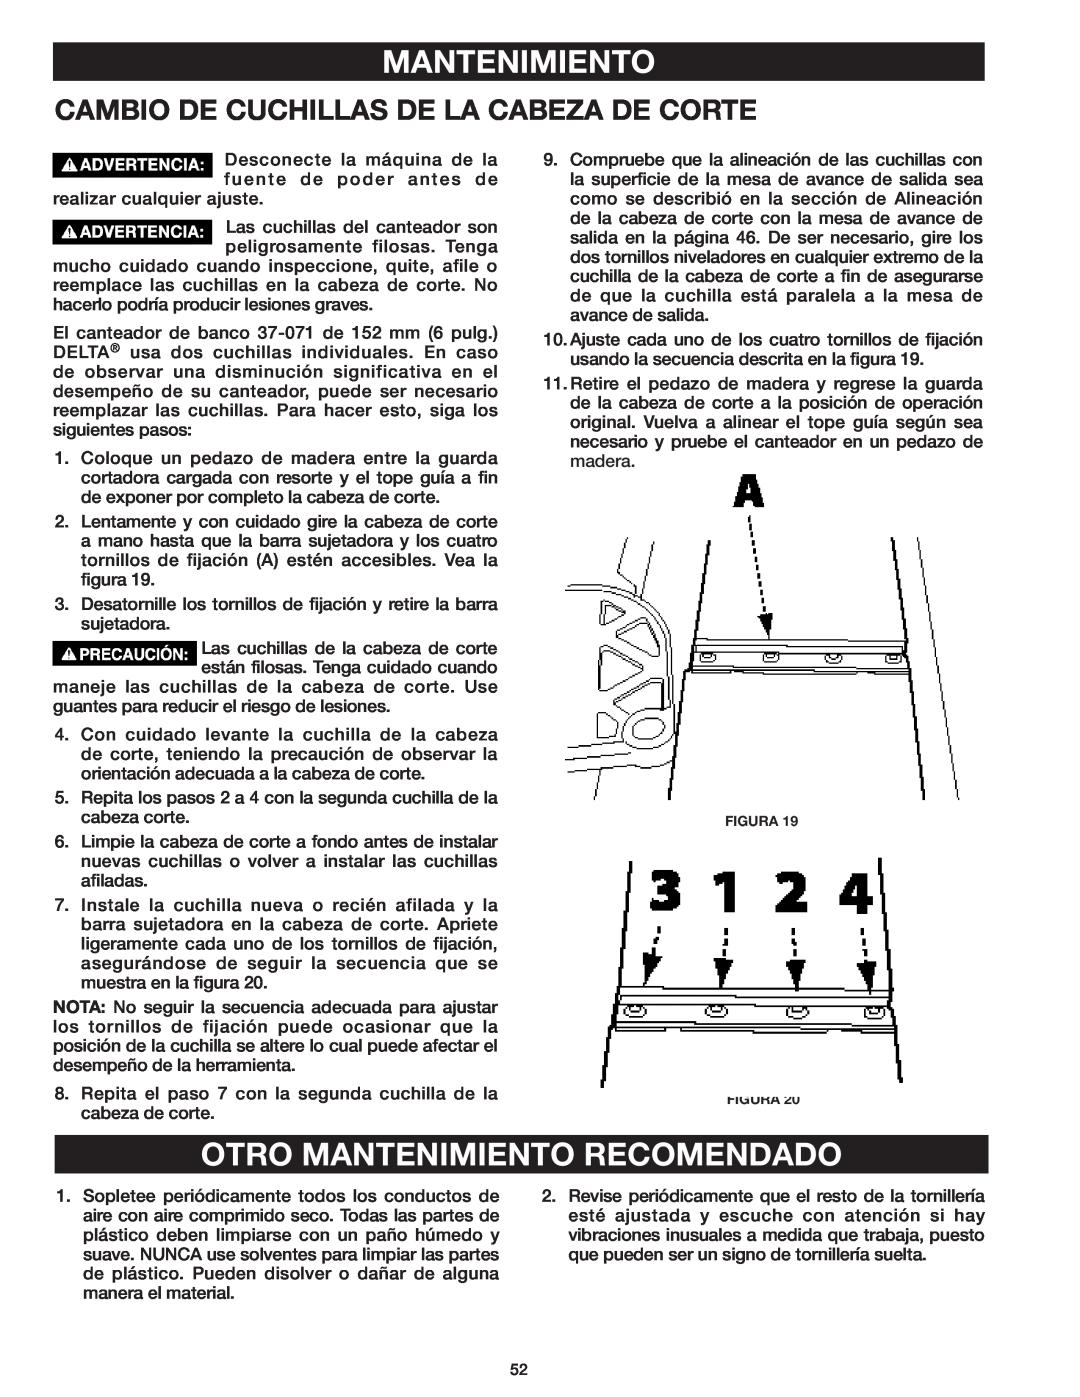 Delta 37-071 instruction manual Otro Mantenimiento Recomendado, Cambio De Cuchillas De La Cabeza De Corte 